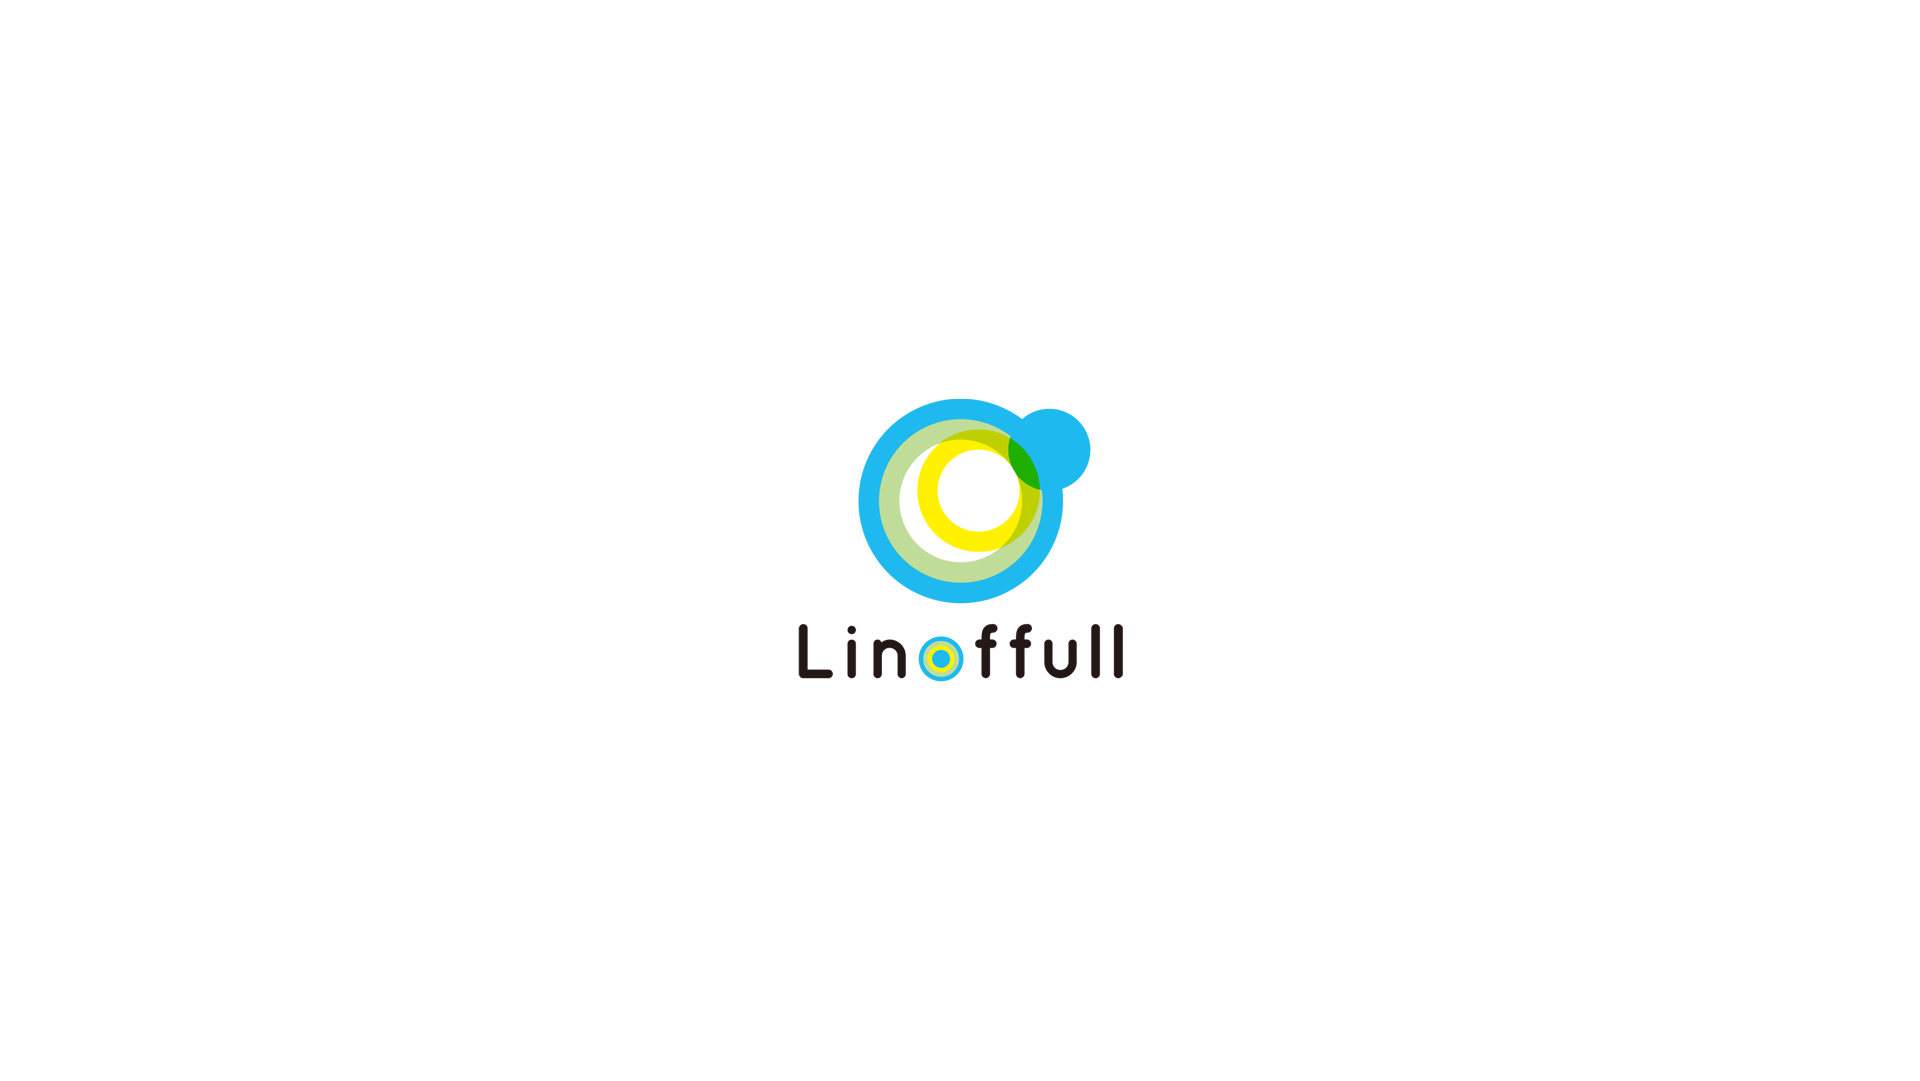 株式会社LINOFFULL